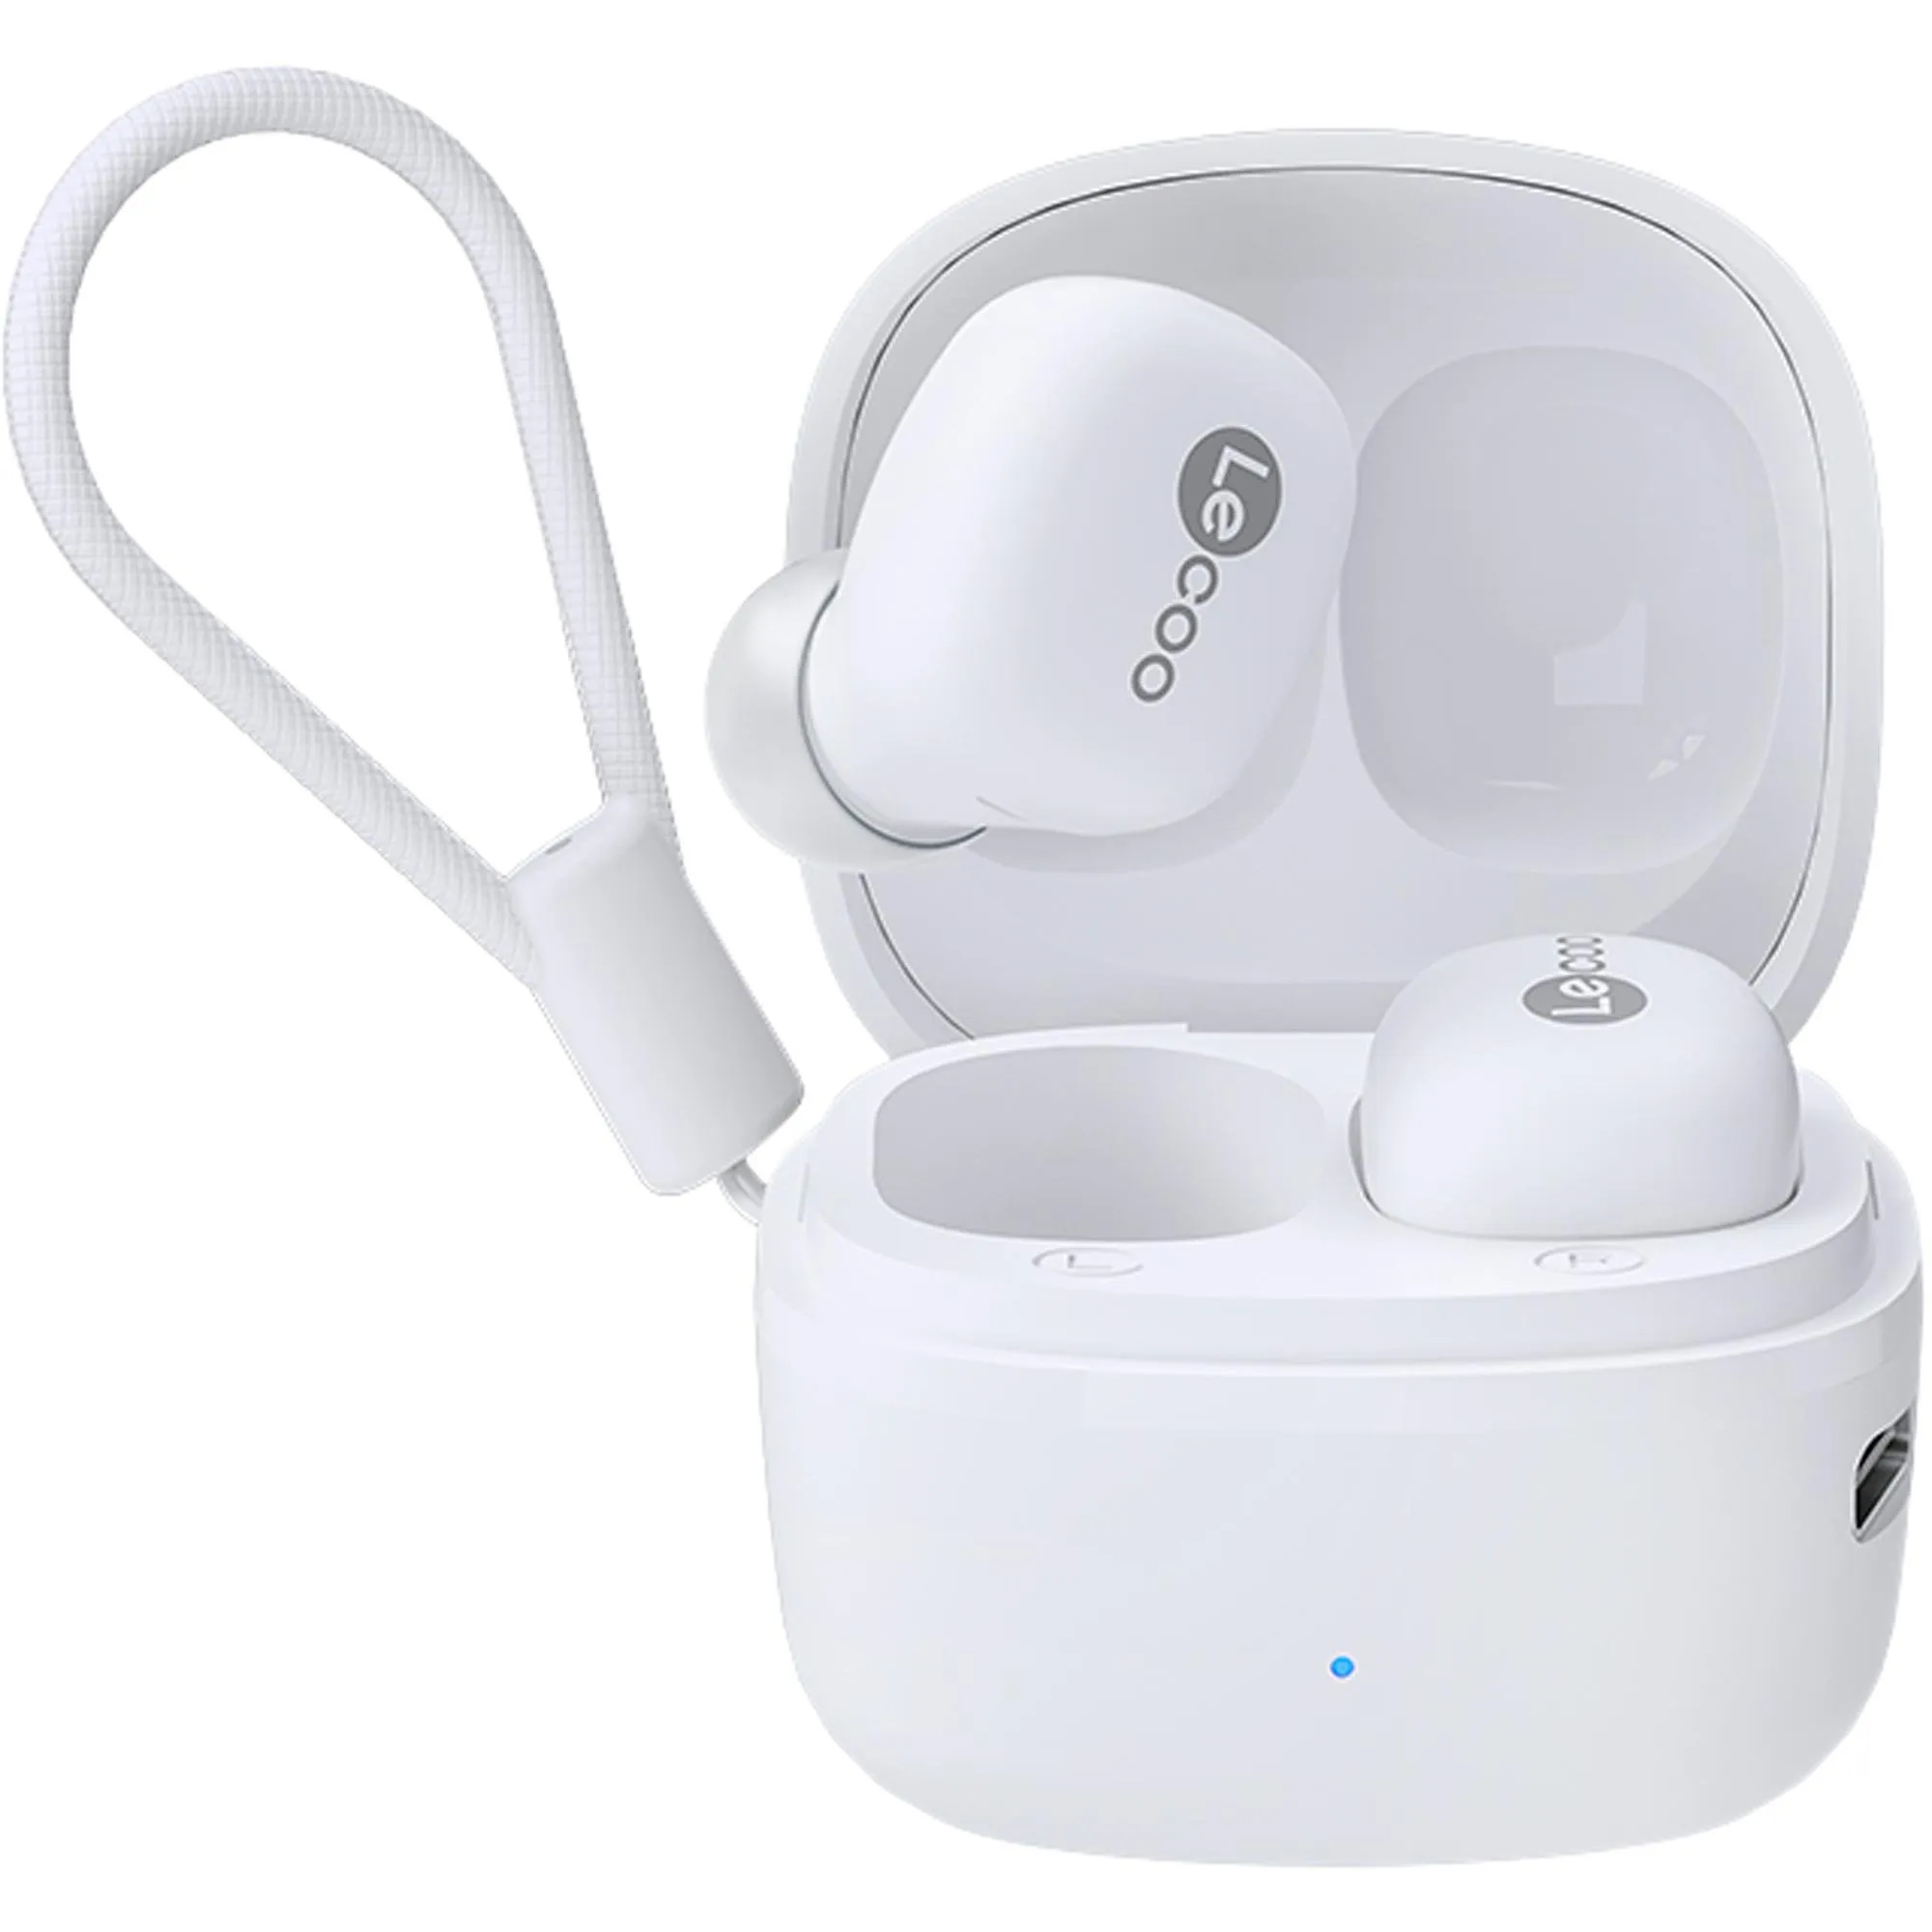 Fone de Ouvido Lecoo EW301 Bluetooth Branco por 0,00 à vista no boleto/pix ou parcele em até 1x sem juros. Compre na loja Mundomax!